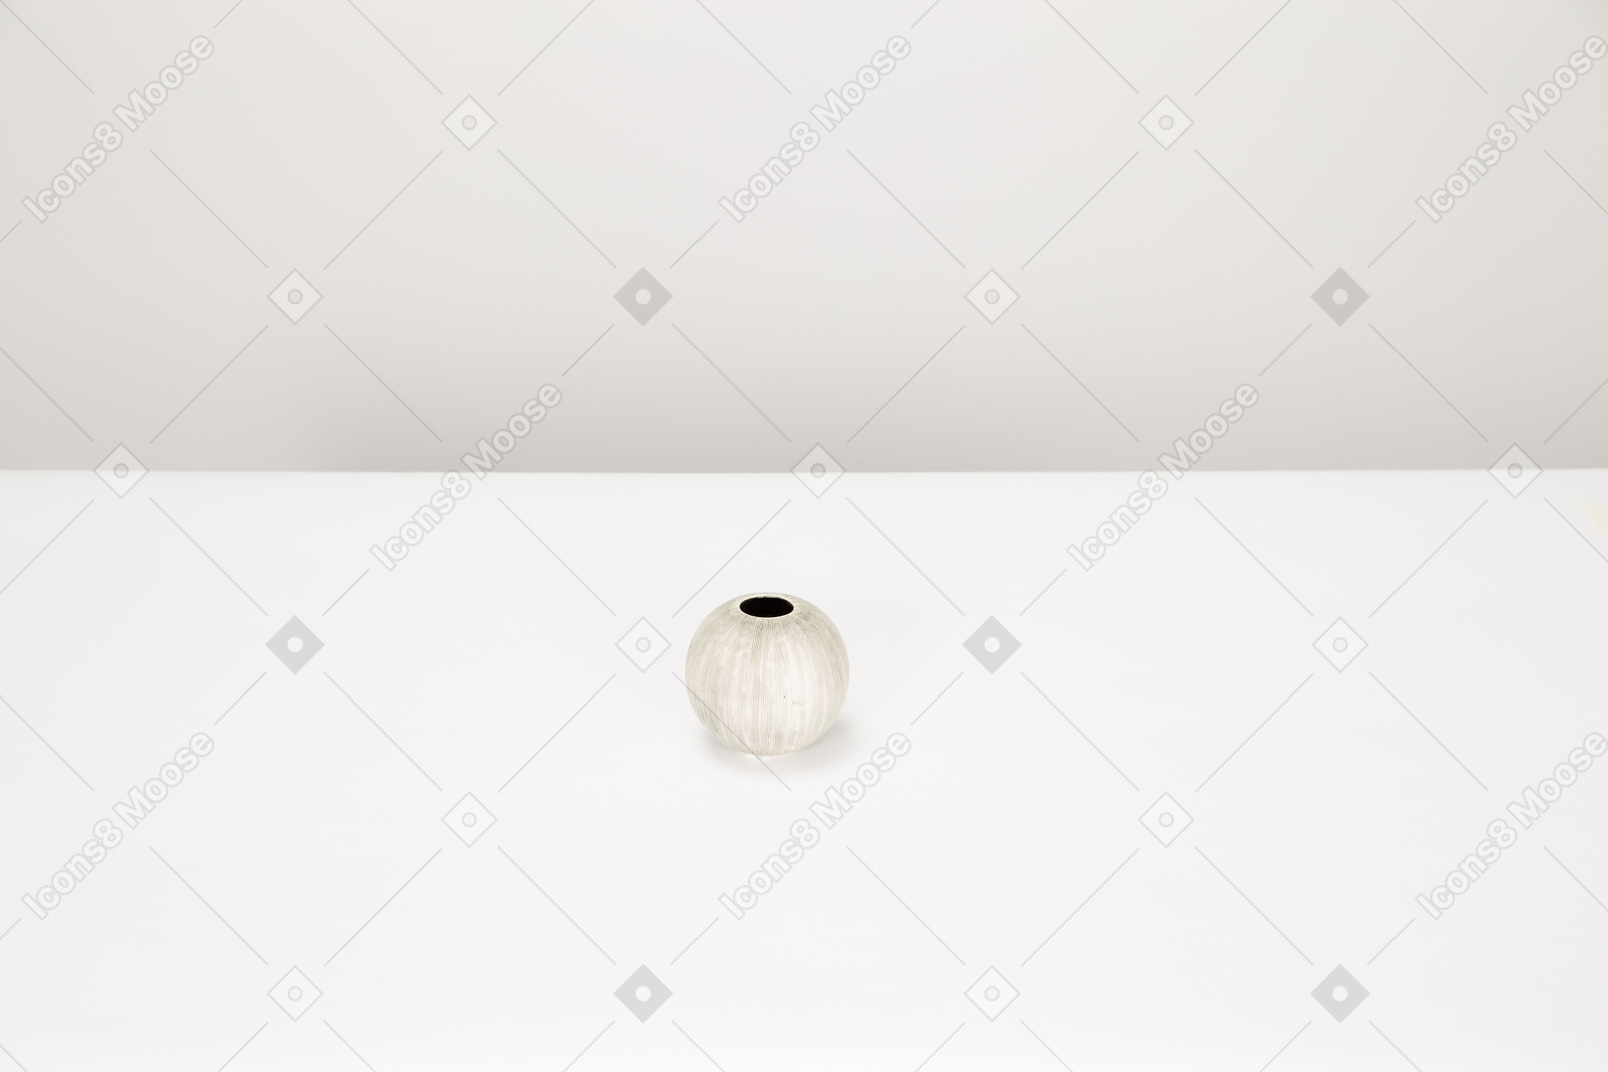 Leere weiße vase auf weißer tabelle